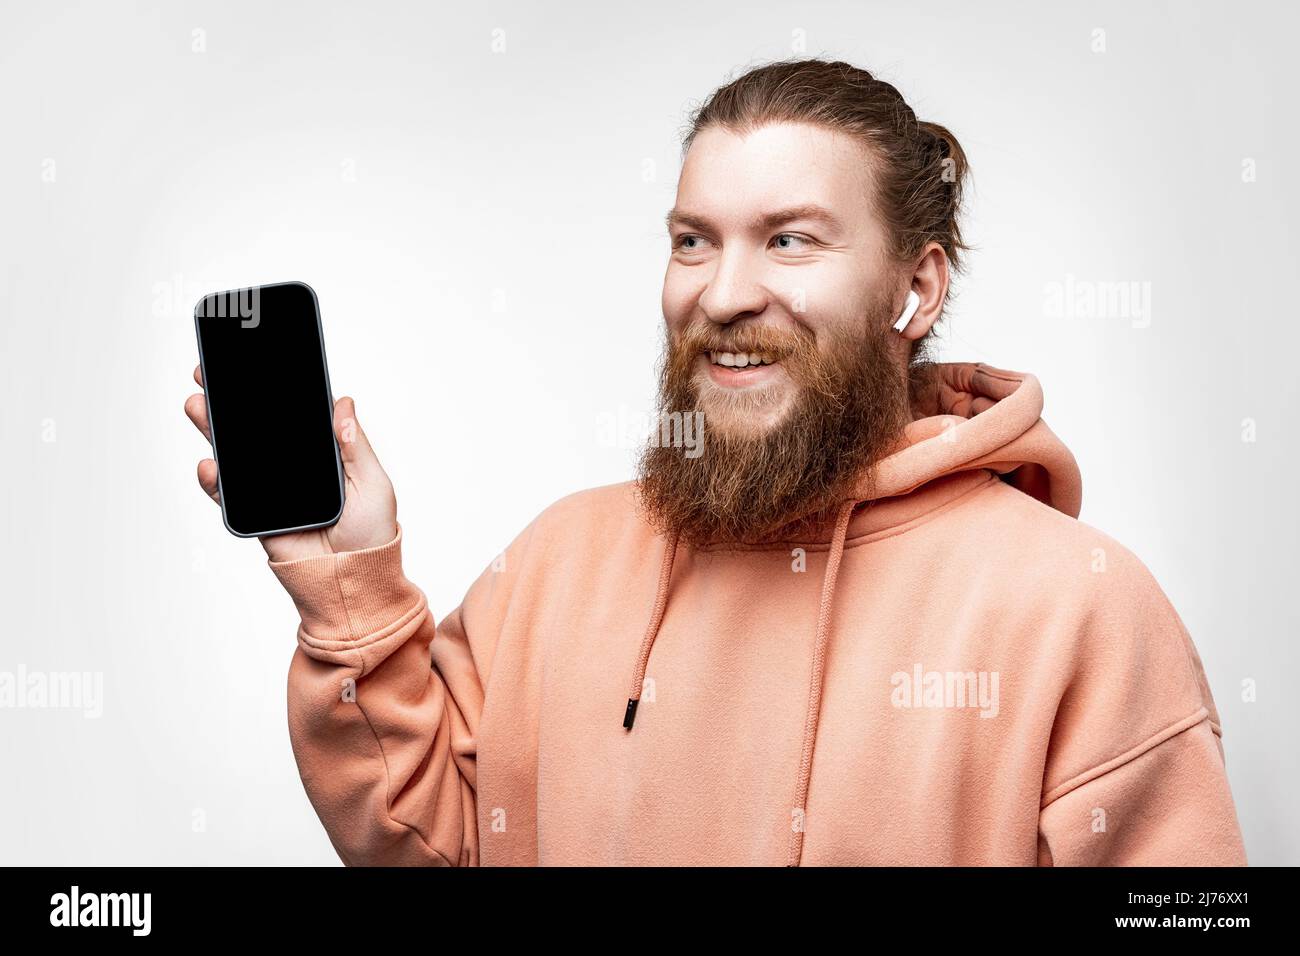 Homme de bonne humeur scandinave tenant un téléphone avec écran noir et casque sans fil isolé sur fond gris. Gars avec gingembre coiffé Banque D'Images